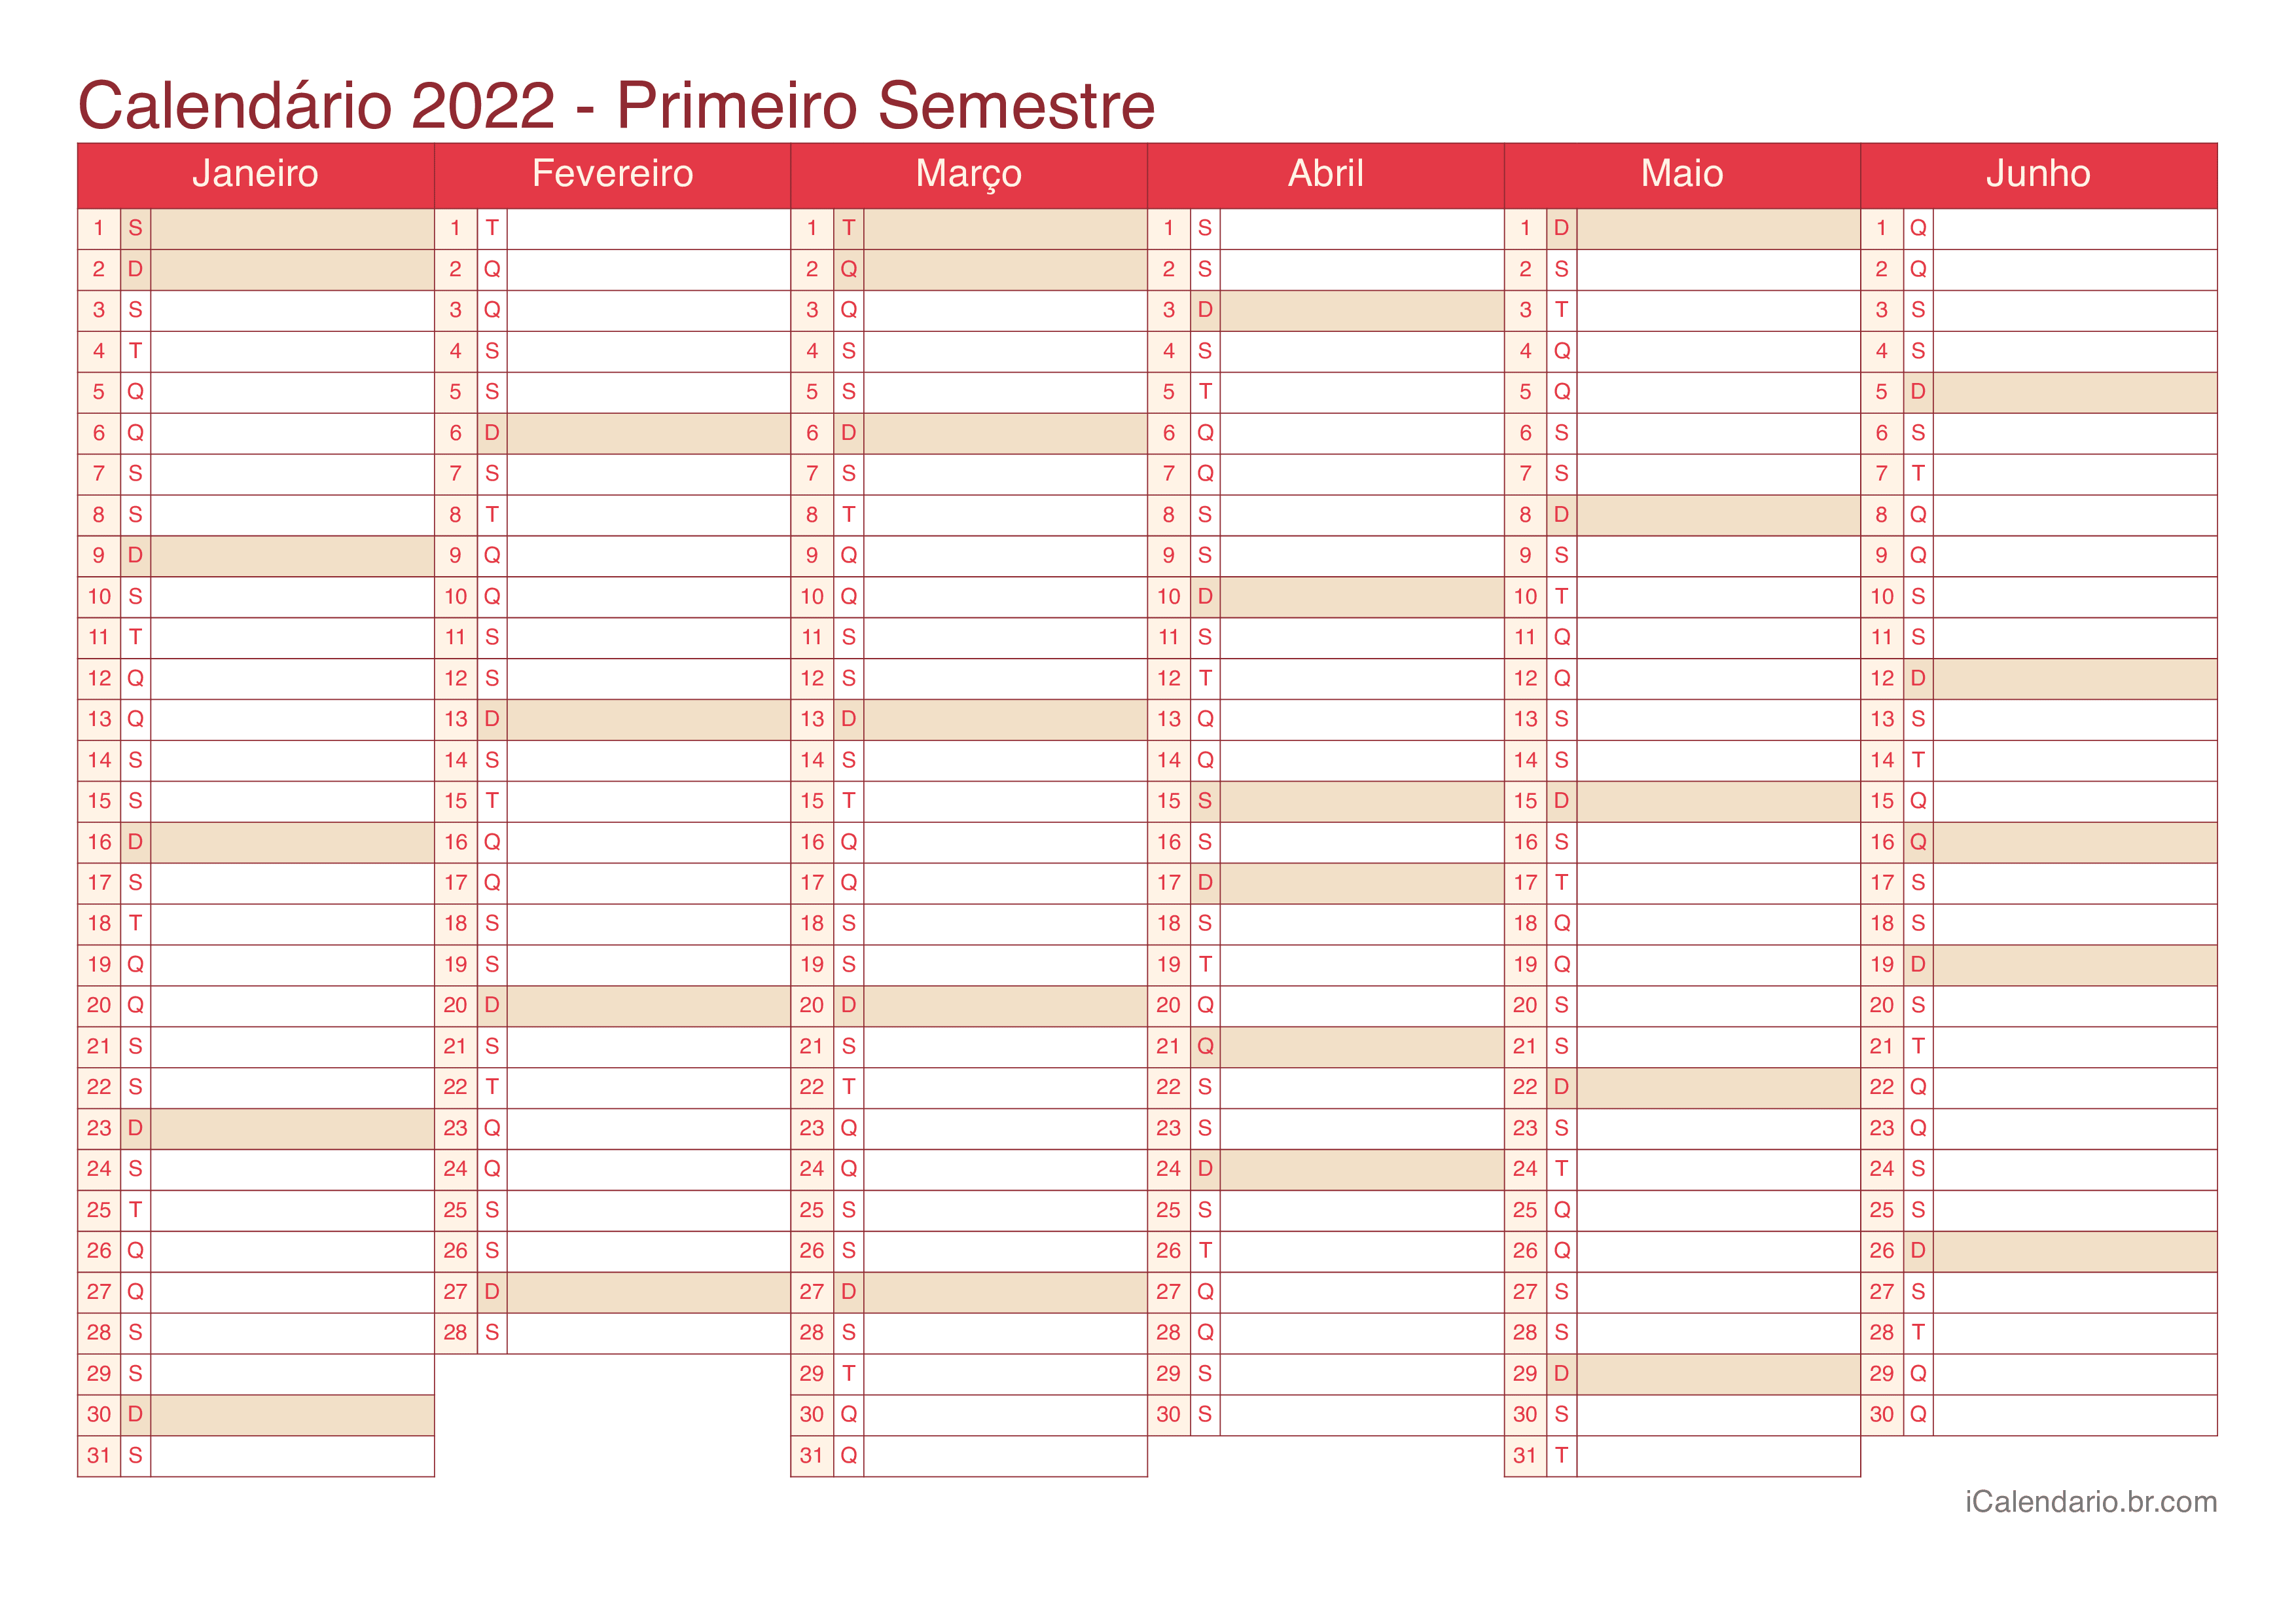 Calendário por semestre 2022 - Cherry